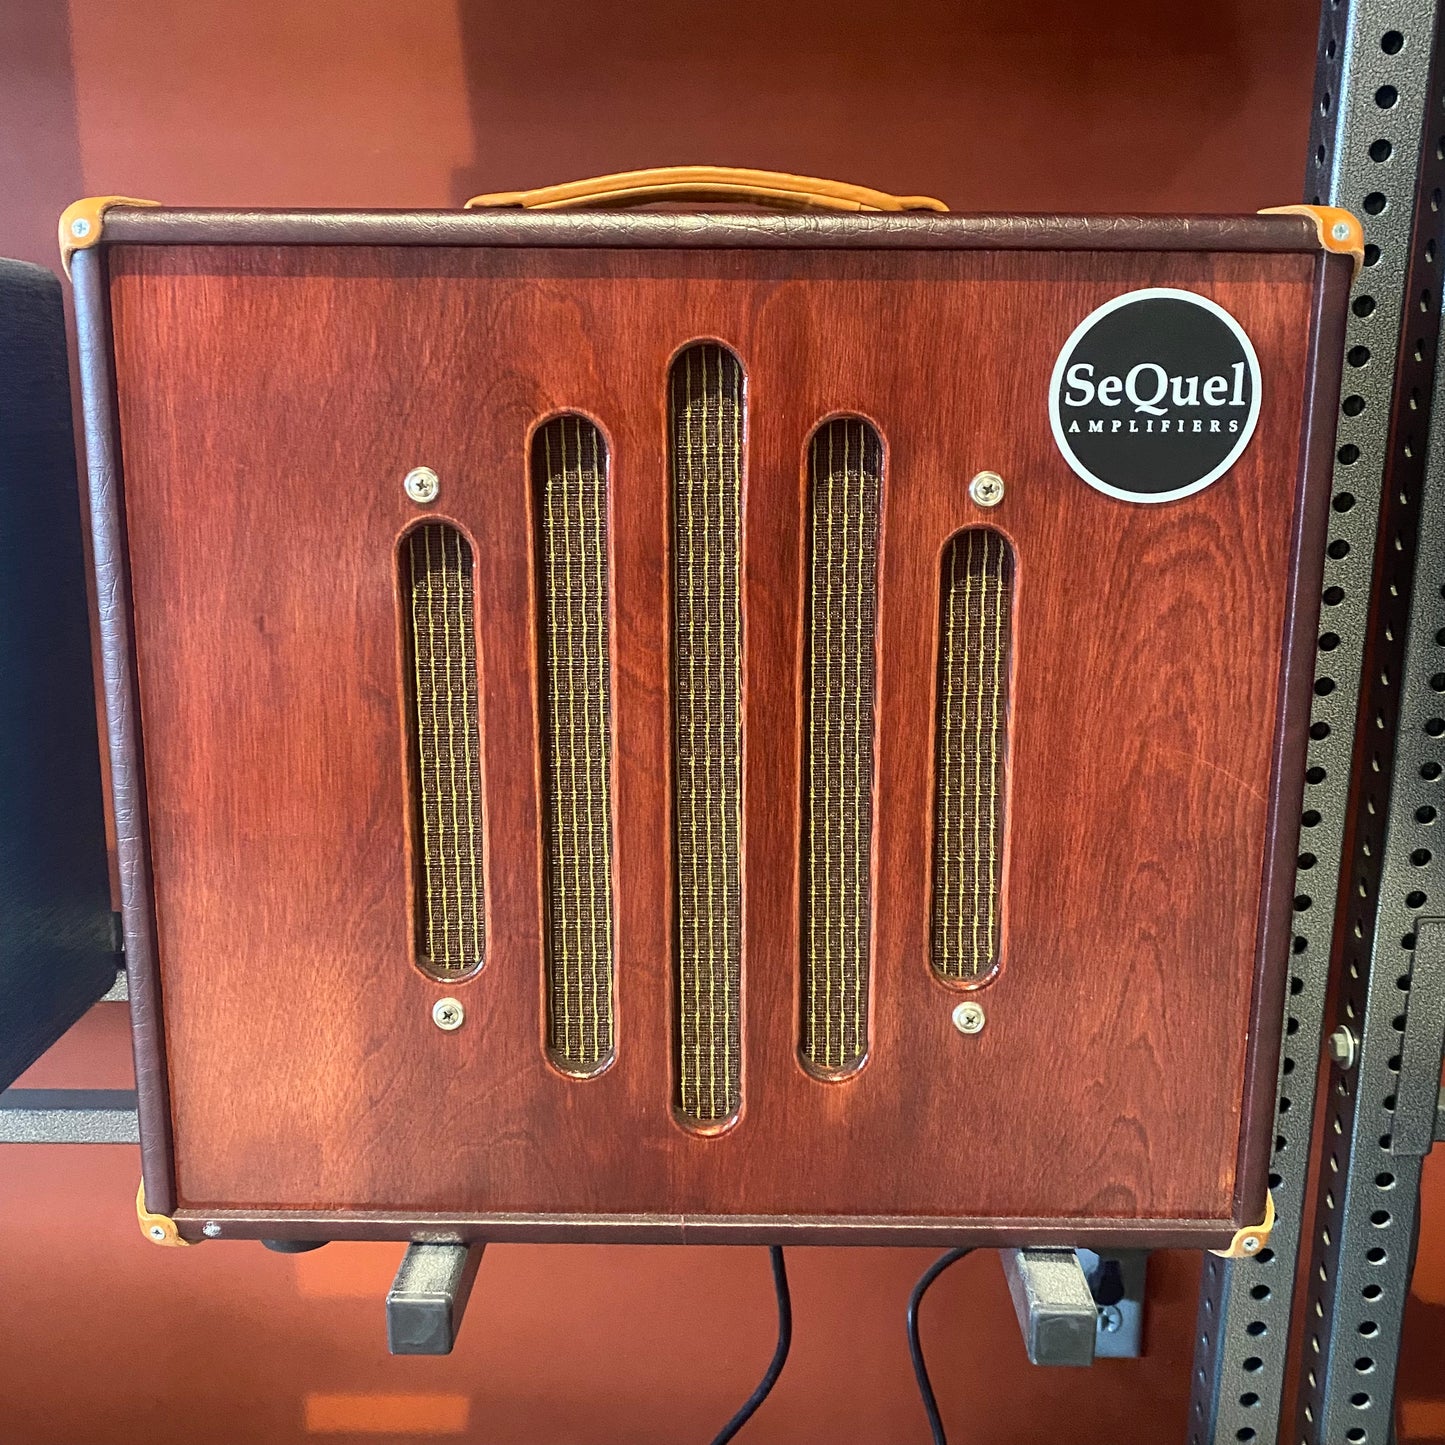 SeQuel Vermont Hybrid Amplifier